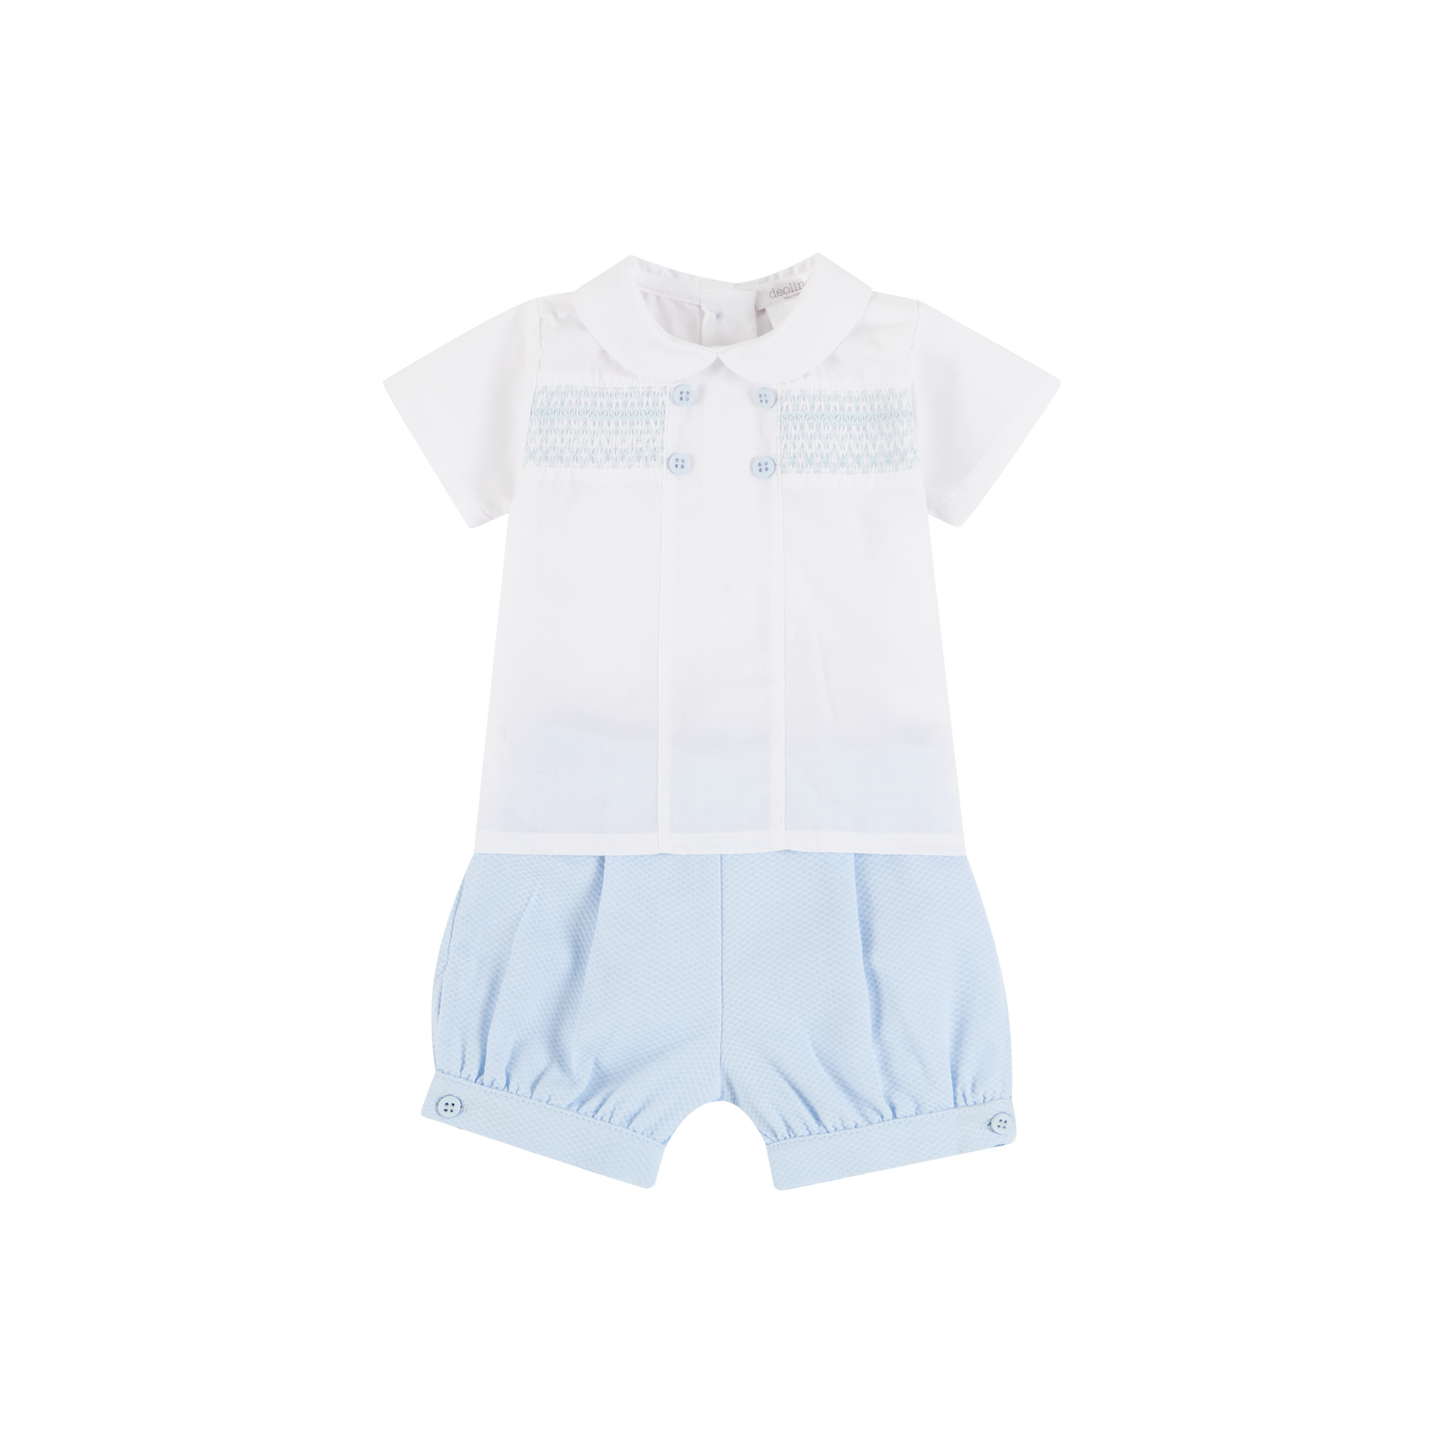 Deolinda Baby Boy Blue & White Shorts Set